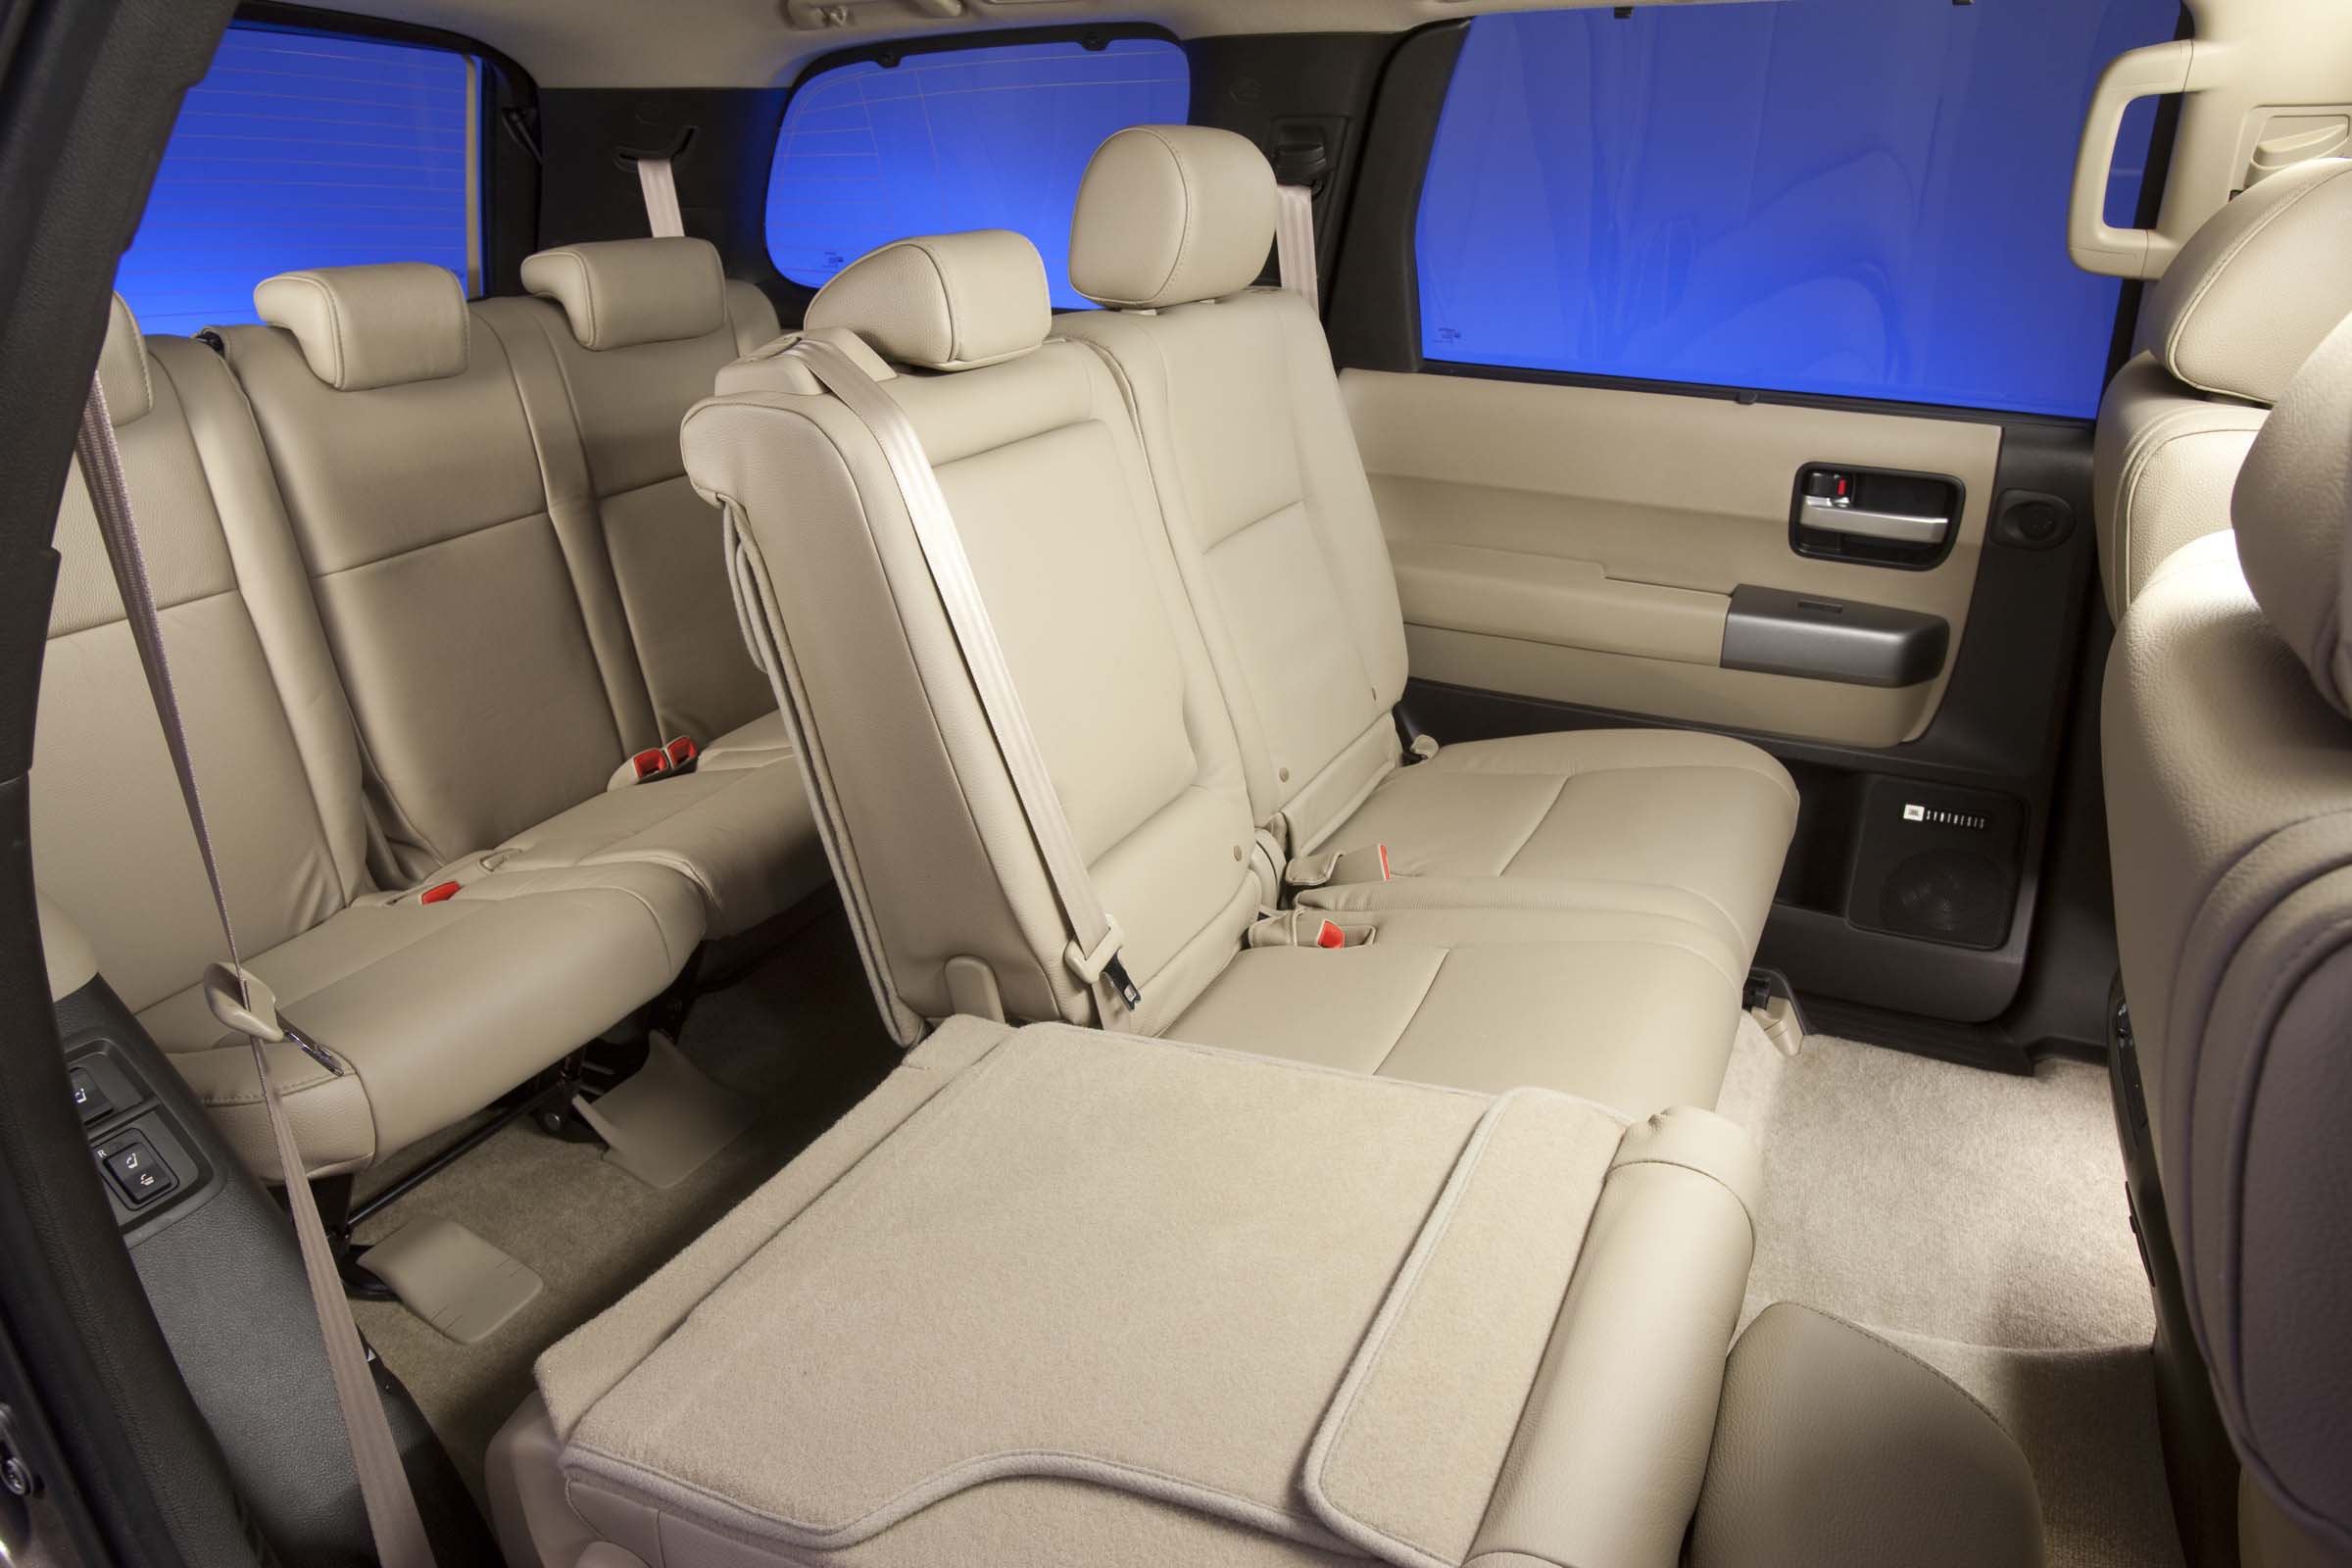 2015 Toyota Sequoia seats